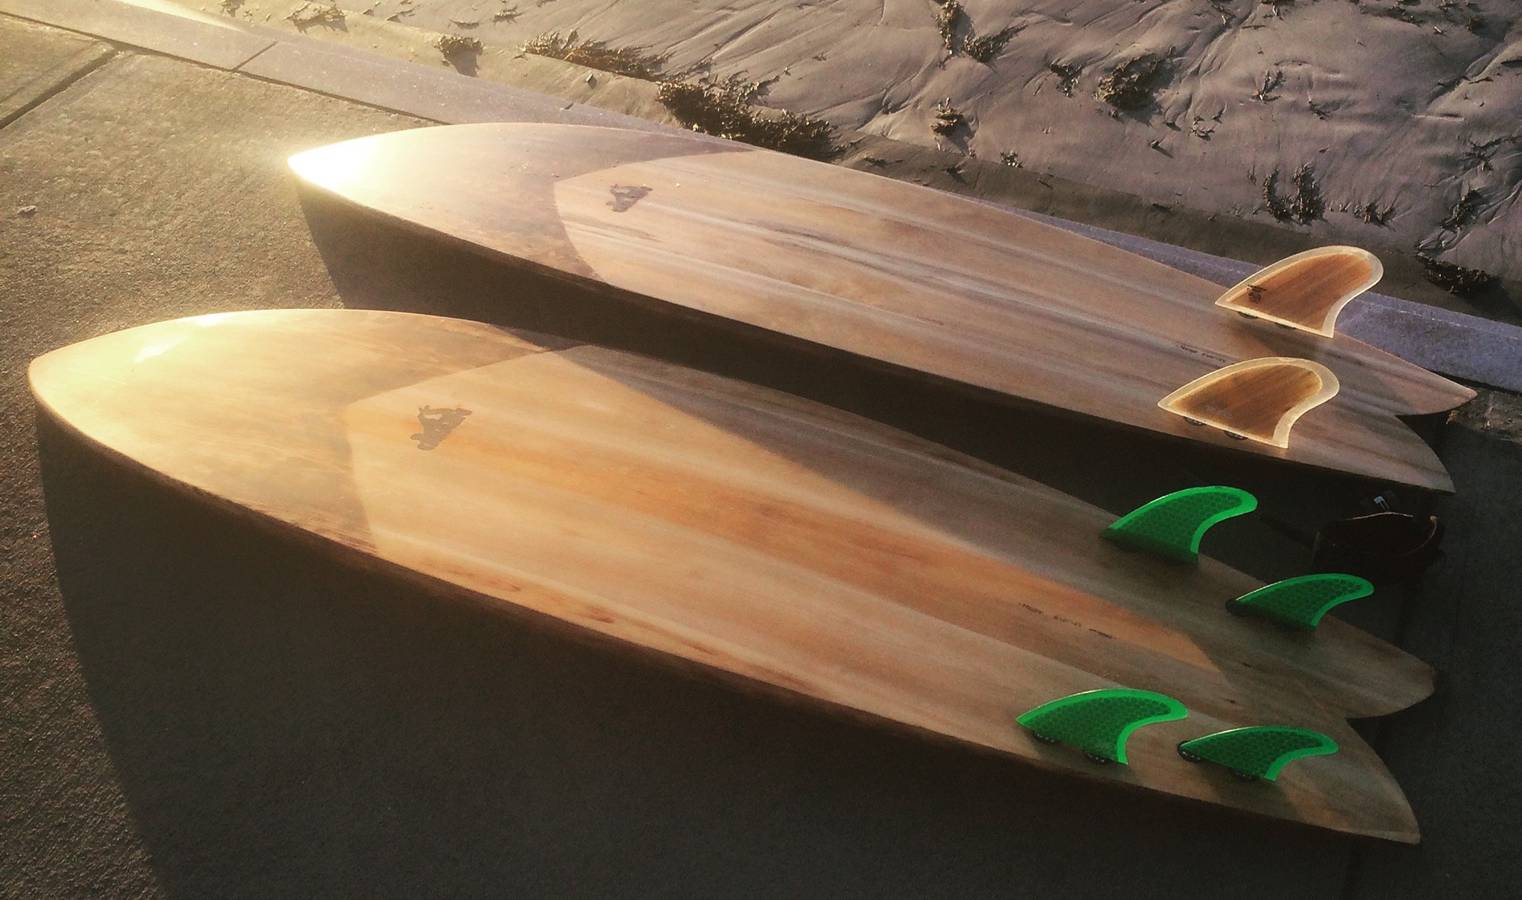 Wherry hollow wooden surfboard